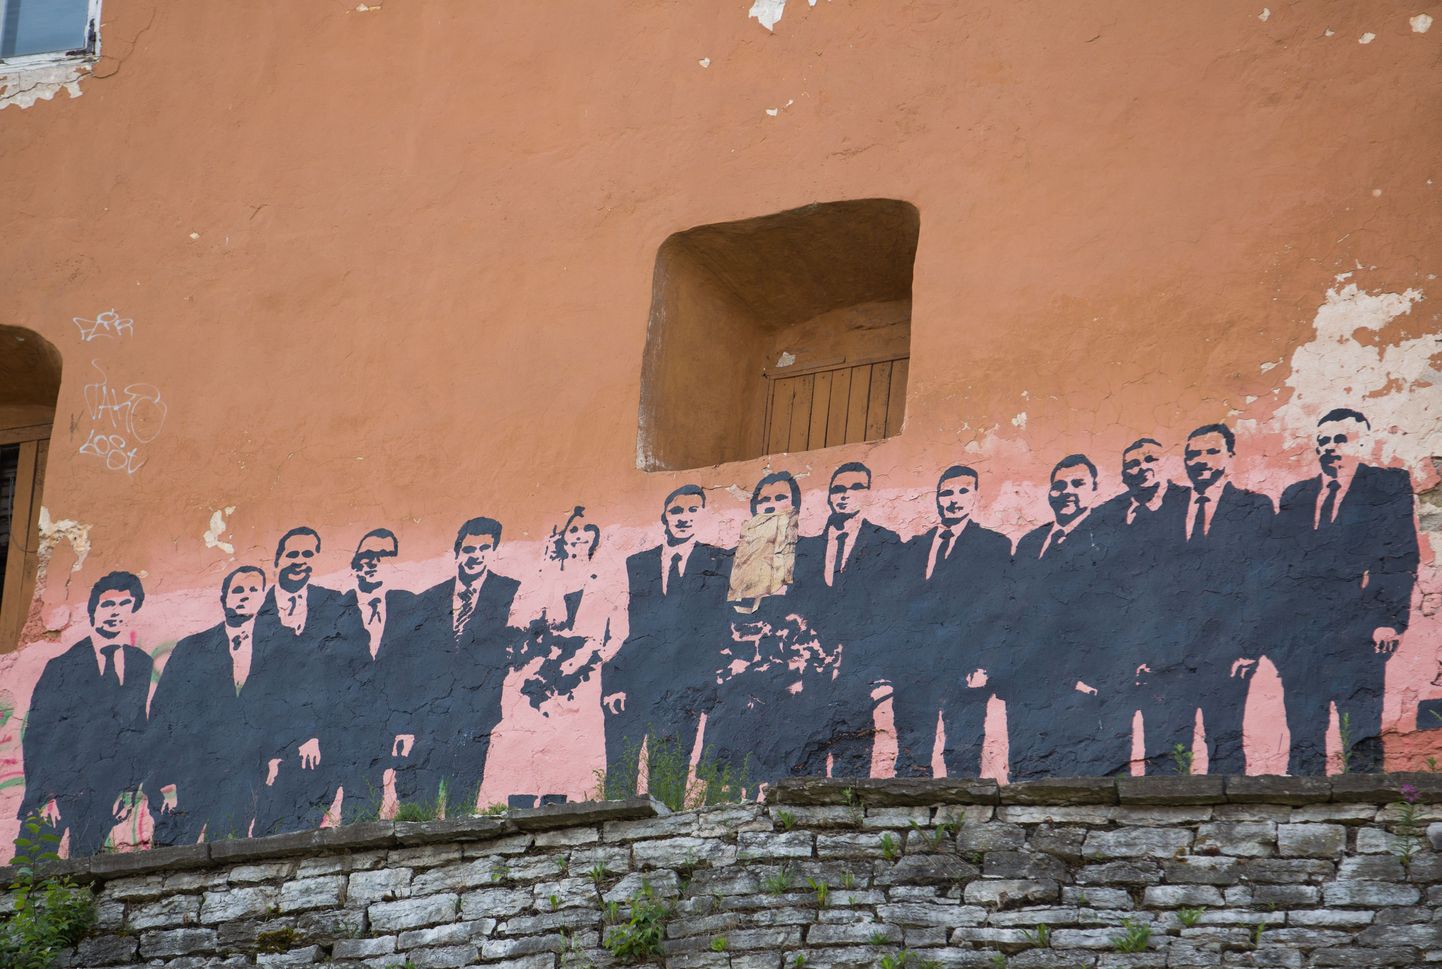 Nunne täaval asuv graffiti valitsusest sai sel nädalal ajakohase täienduse: Keit Pentus-Rosimannuse kujutis varjati paberkotiga.